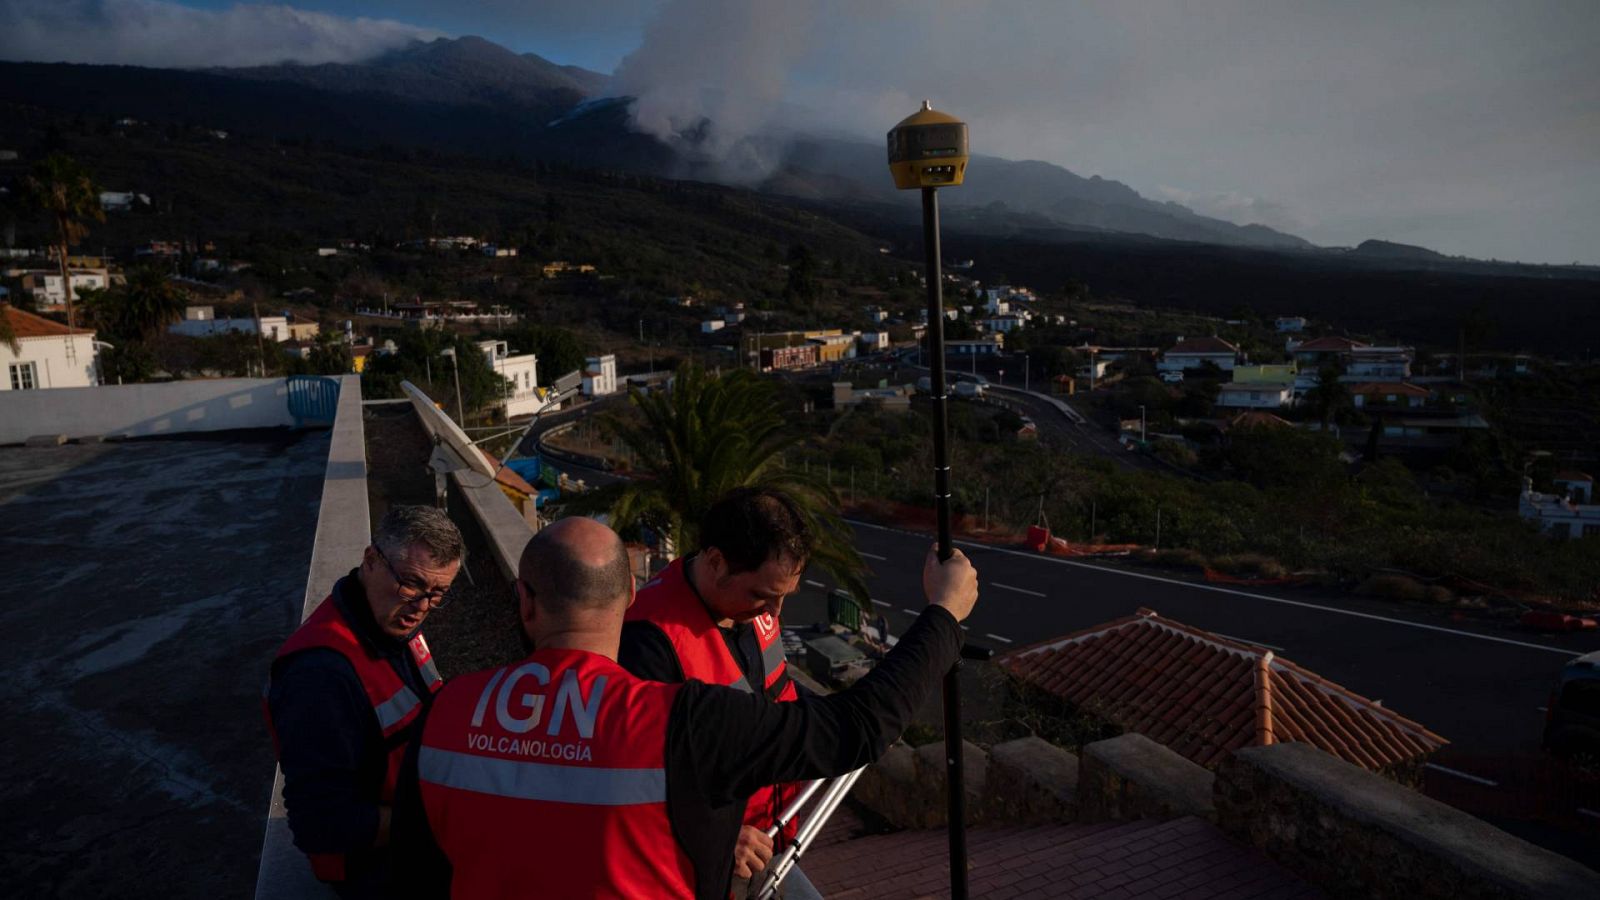 14 horas - Volcán de La Palma: "Habrá gases y temblores durante varios meses" - Escuchar ahora